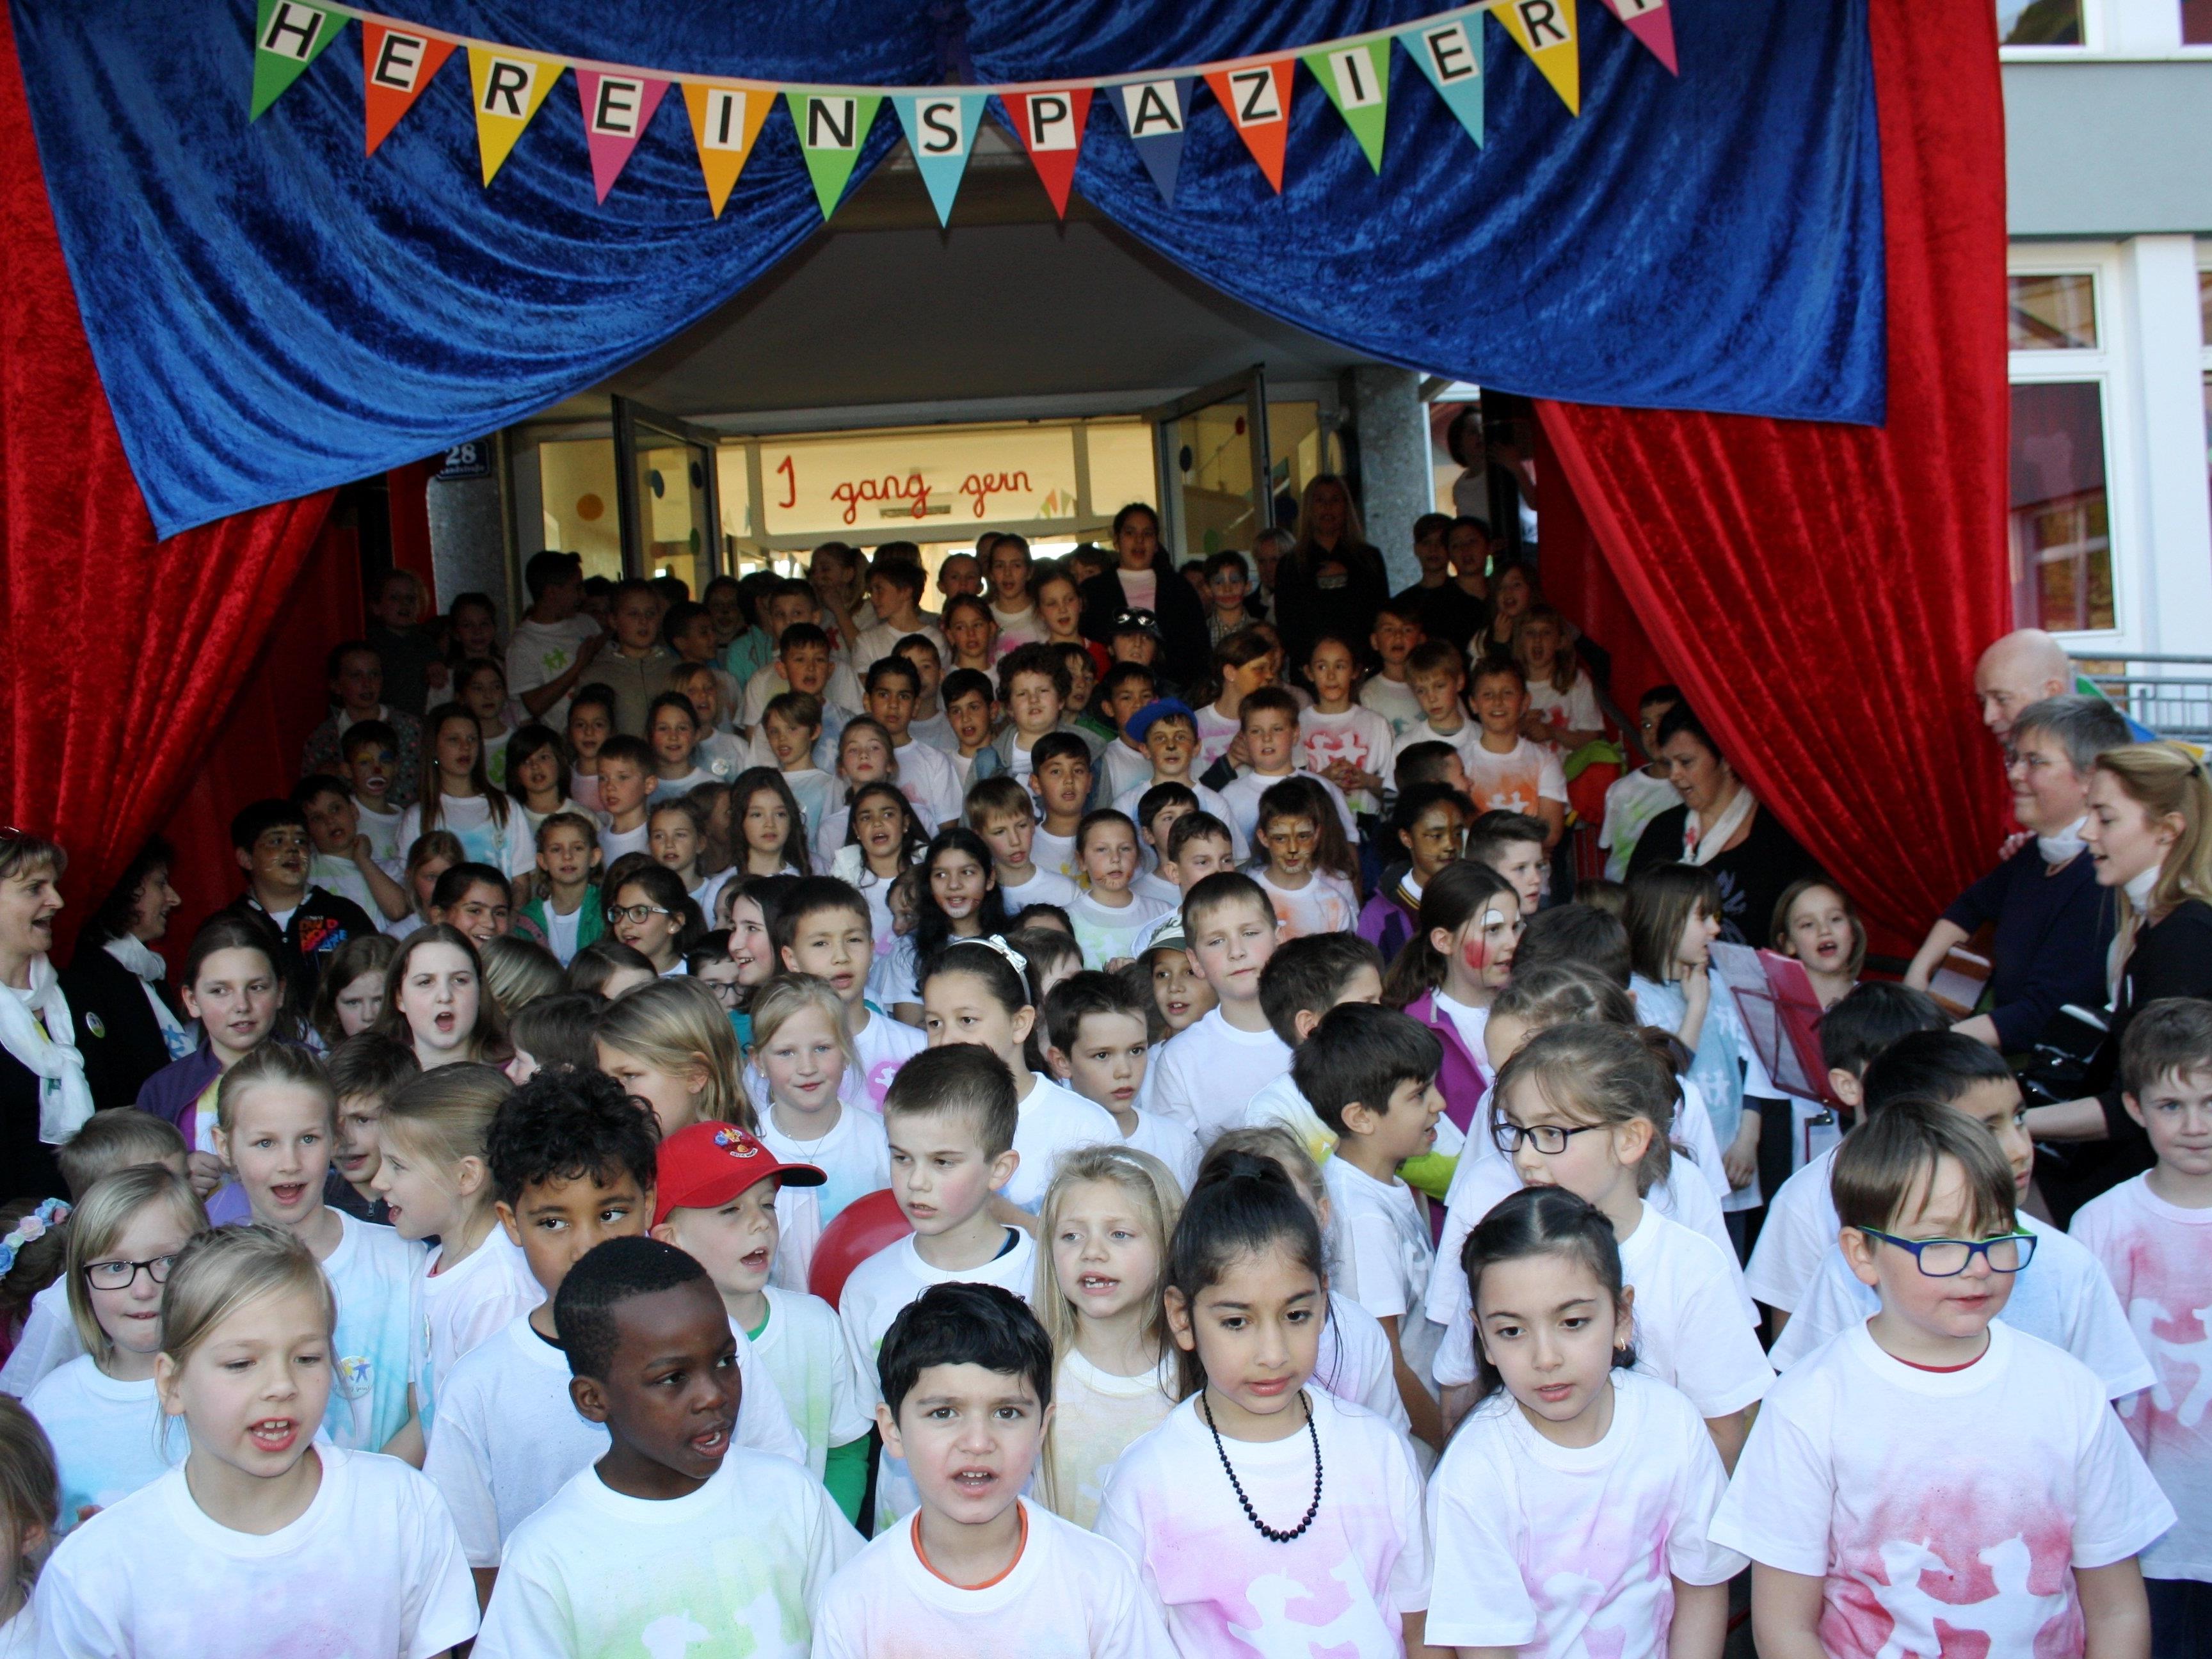 170 Volksschulkinder und ihre Lehrpersonen präsentierten den zahlreichen Besuchern das neue Schullied „I gang gern“ als krönender Abschluss des Jubiläumsfestes „50 Jahre Neue Volksschule Lochau“.